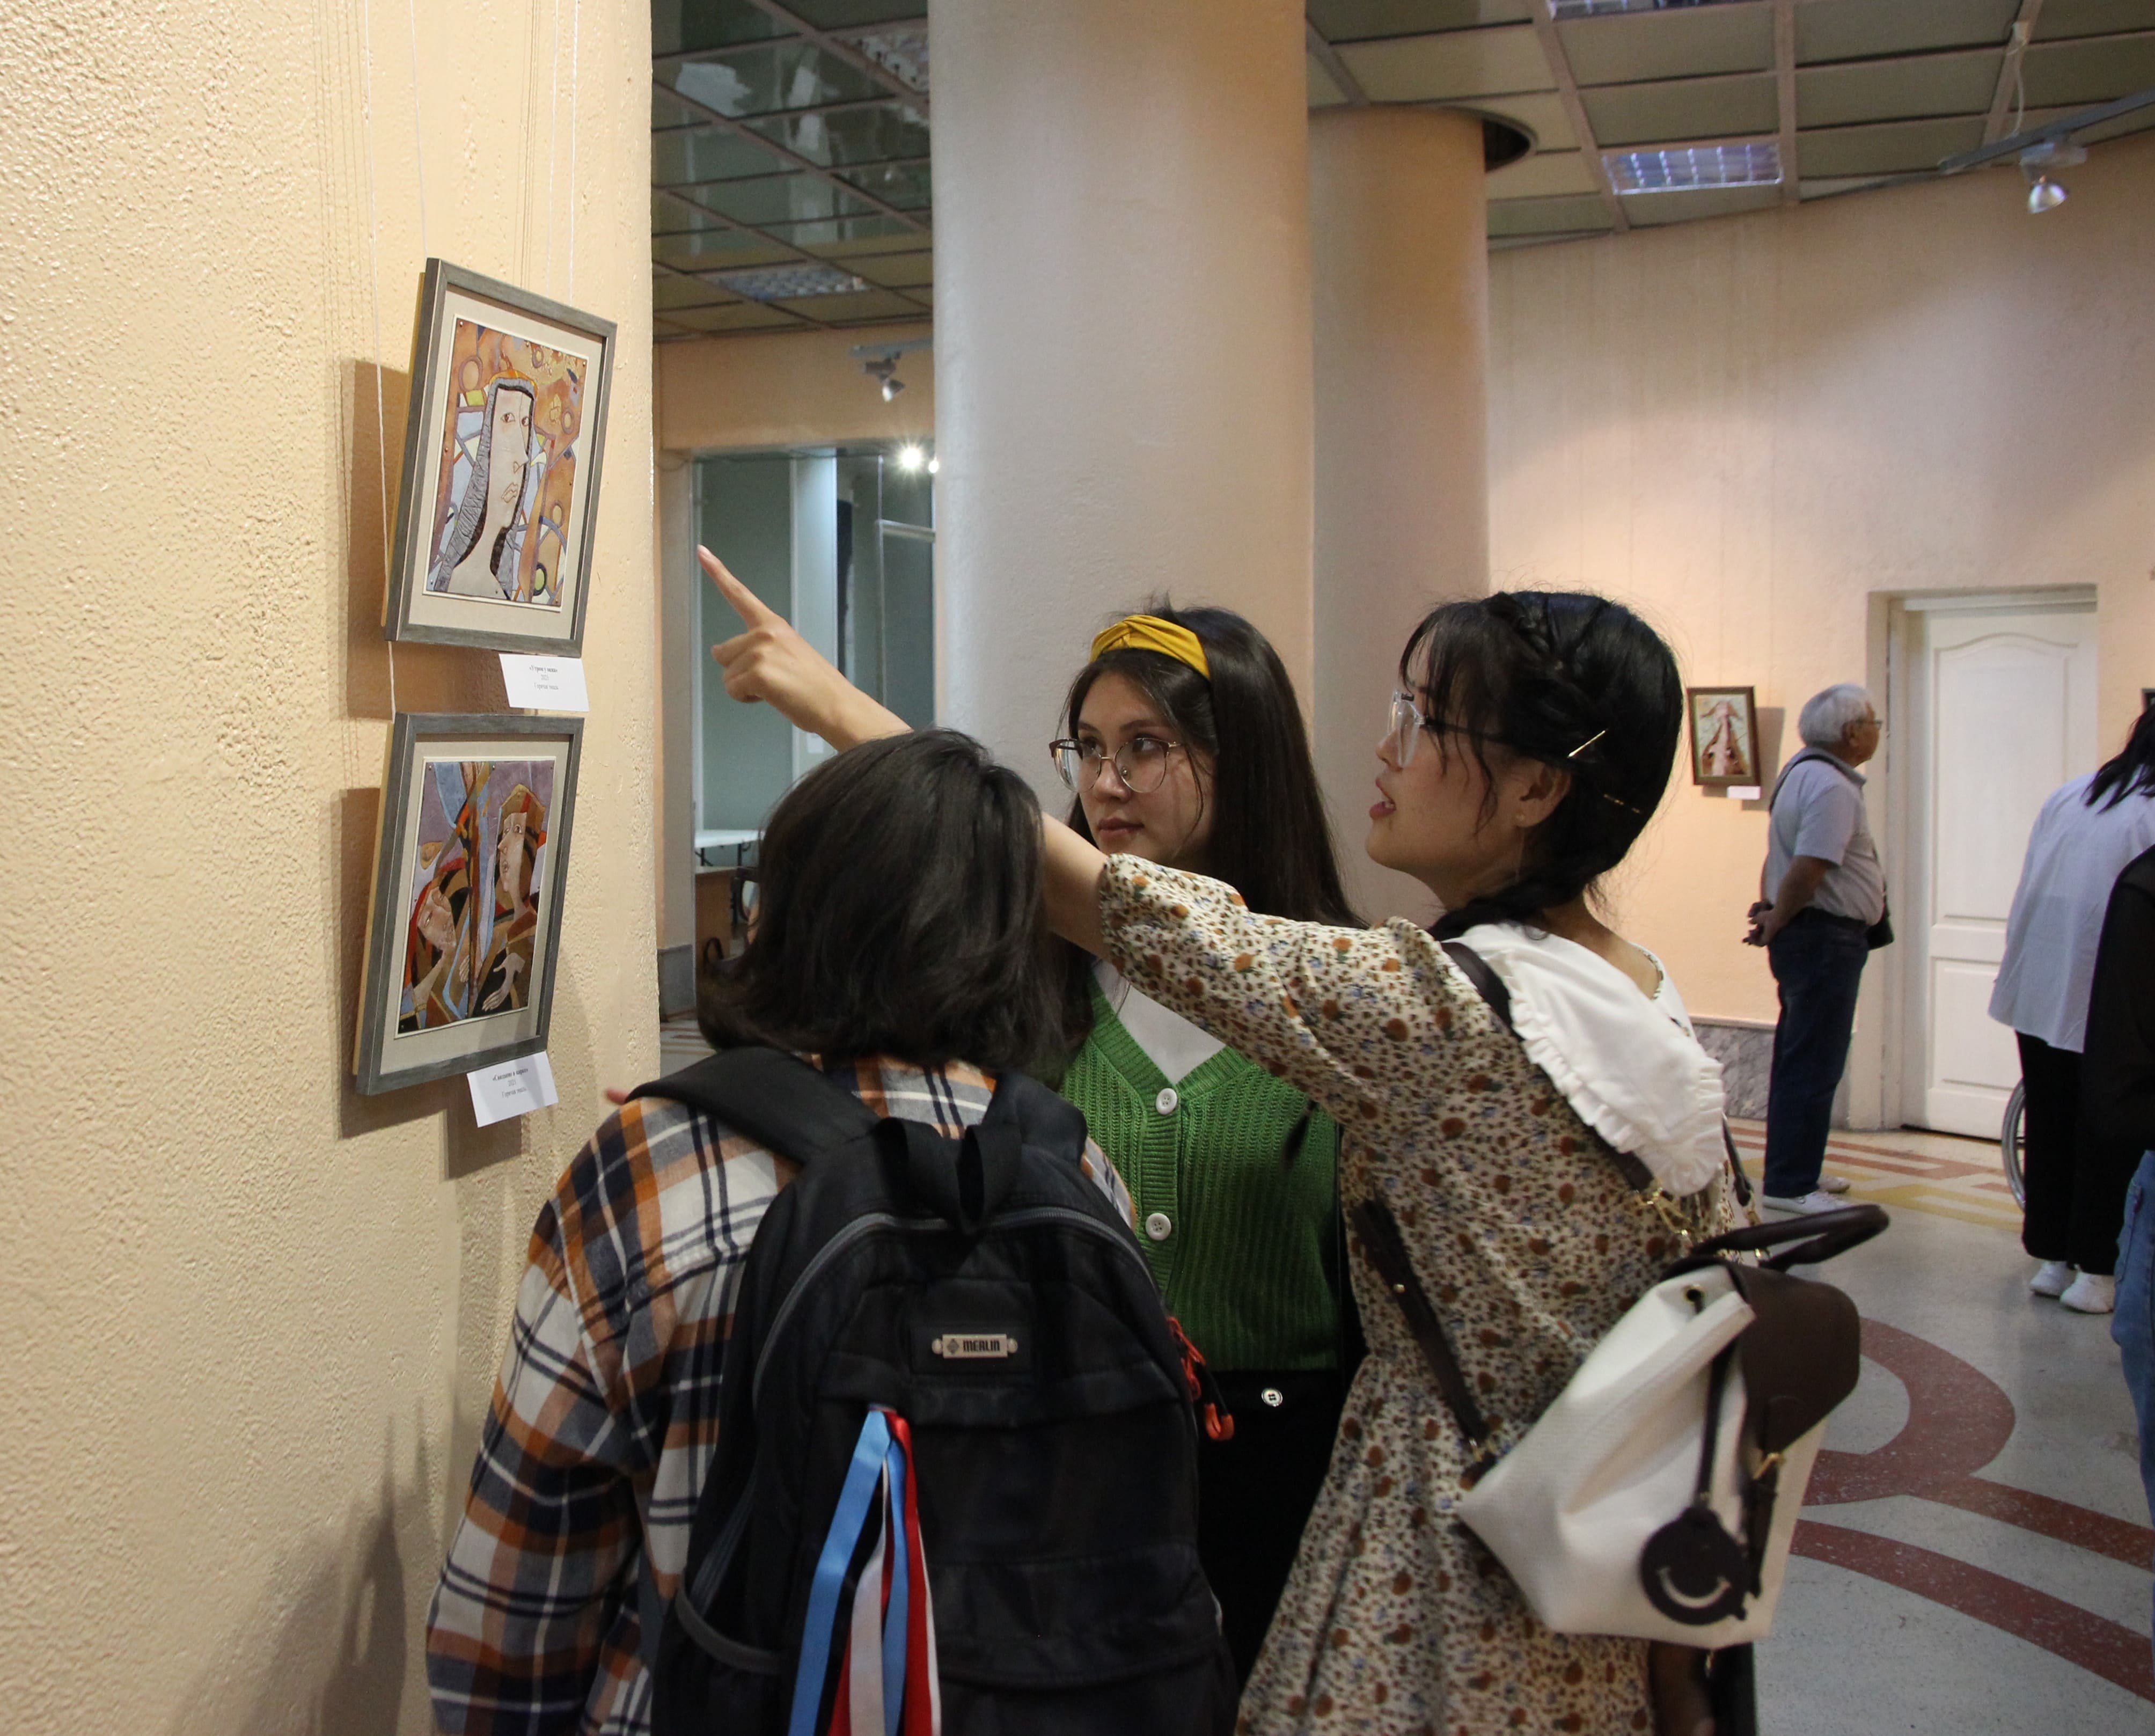 Выставка картин из горячей эмали открылась в Улан-Удэ